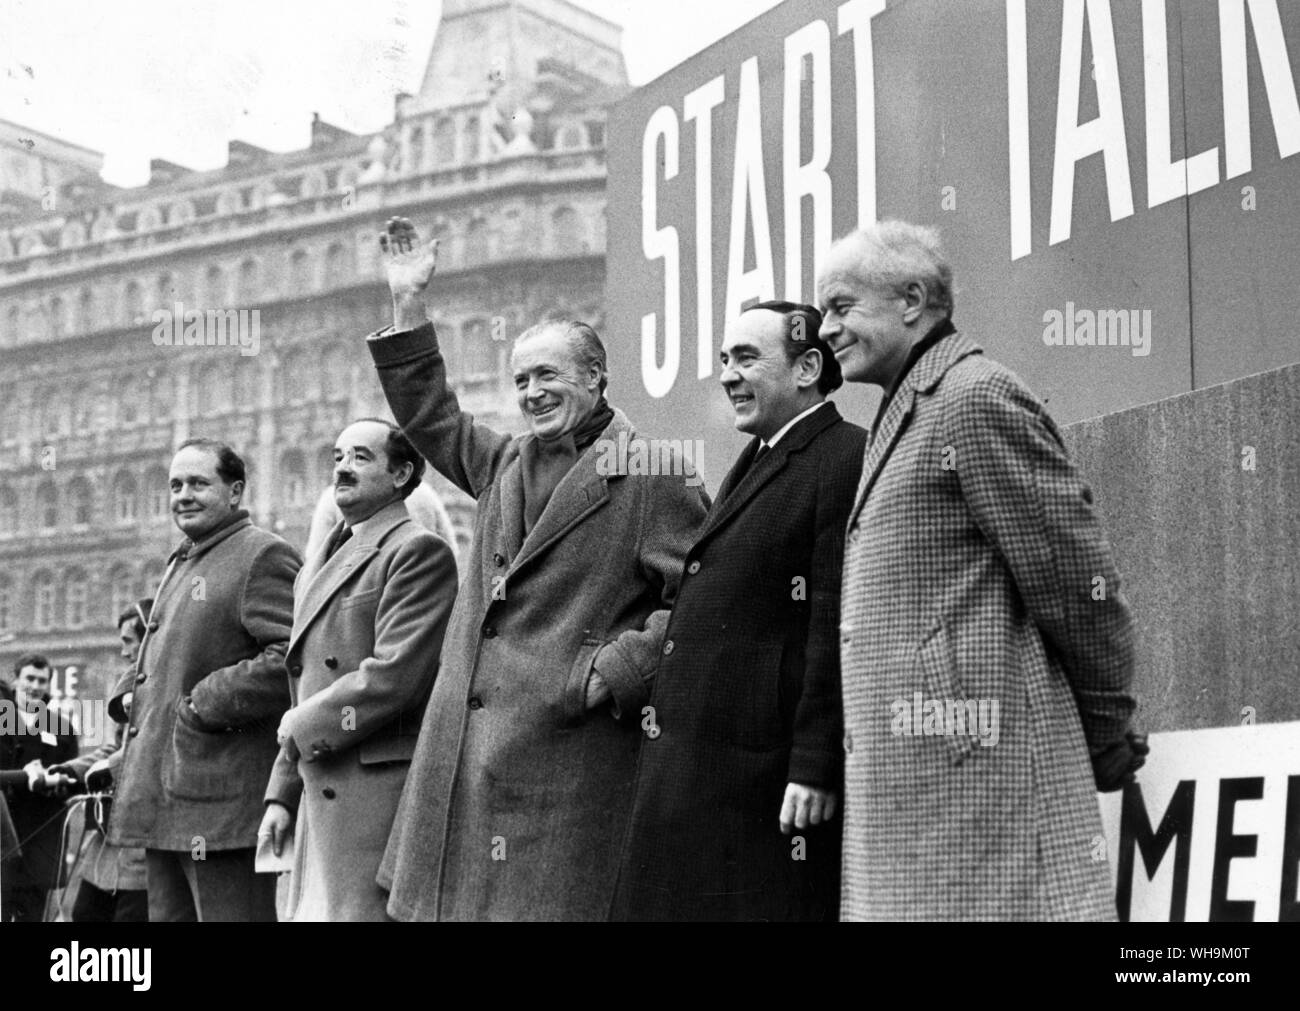 15 Gennaio 1967: Il sig. Duncan Sandys e altri Tory M.P.s scoppiata nella violenza a Londra. La polizia ha lottato per tenere in ordine le folle che si stavano dirigendo verso Downing Street. Foto Stock